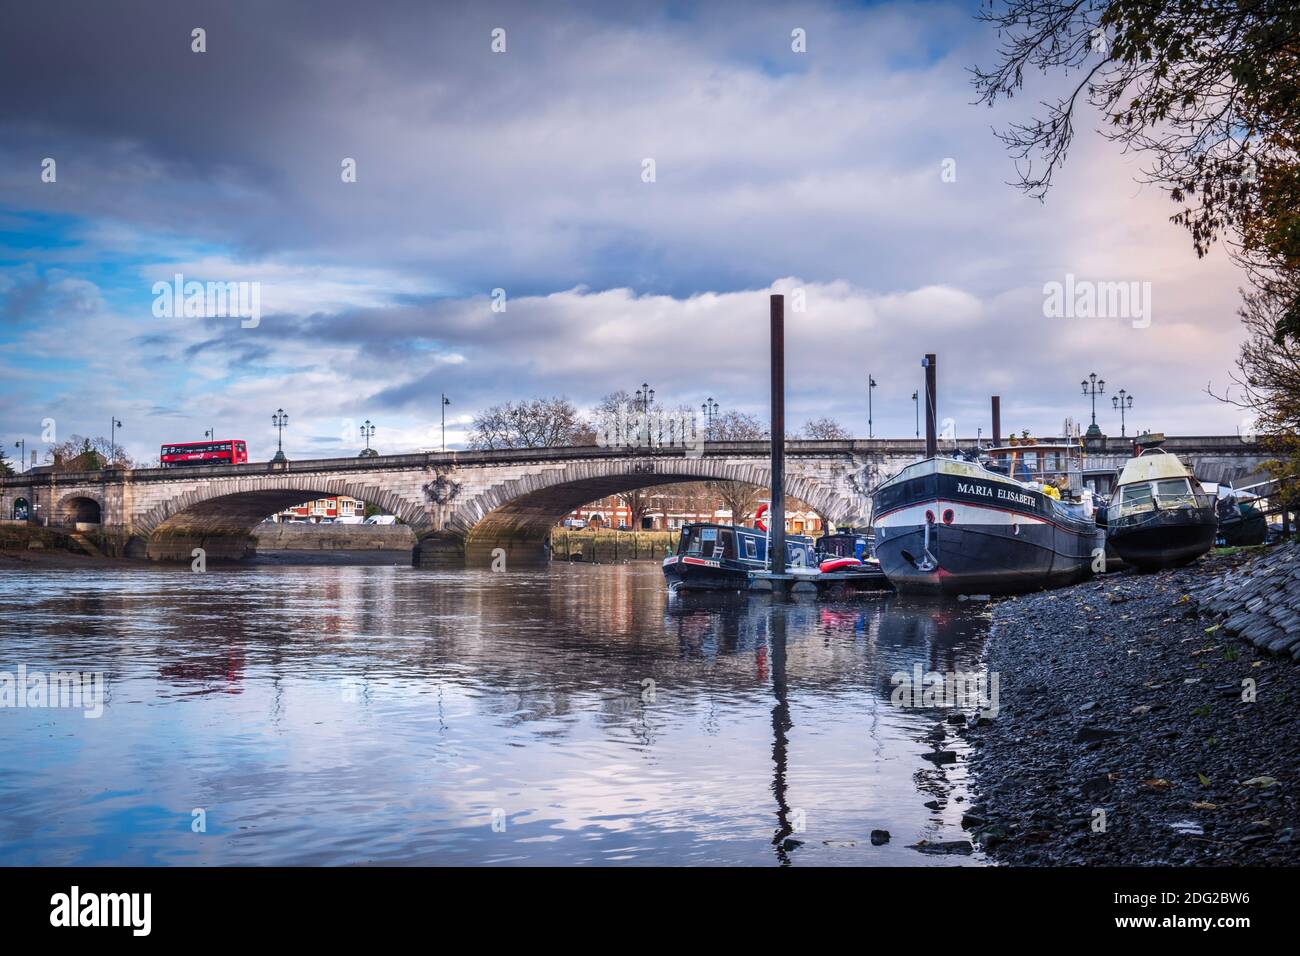 Reino Unido, Londres, Richmond-upon-Thames / Hounslow, Kew Bridge, un puente de grado II sobre el río Támesis, Támesis en marea baja, casas flotantes amarradas Foto de stock